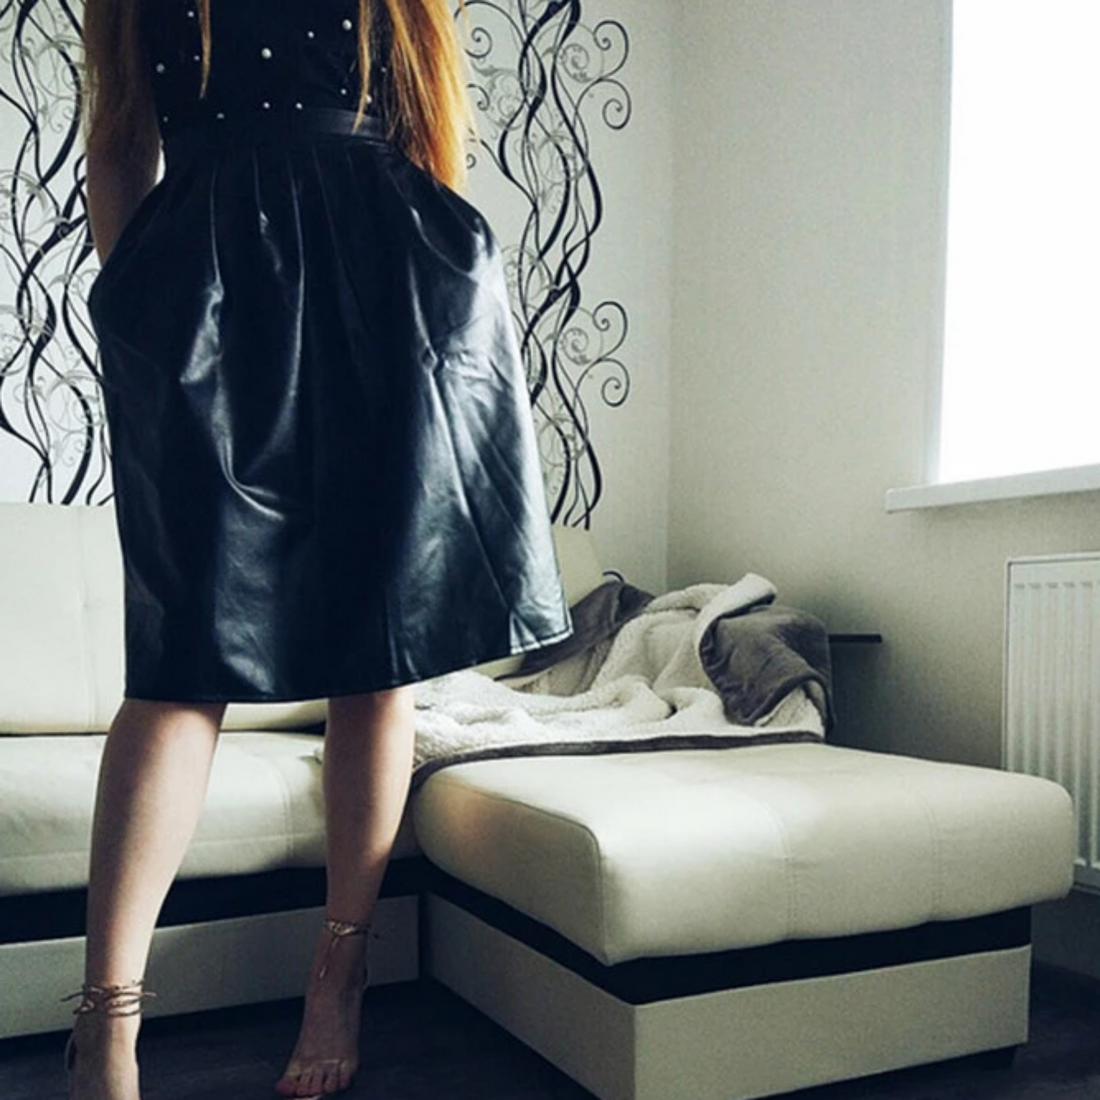 Women's Spring/Autumn Casual PU Leather High-Waist Long Skirt